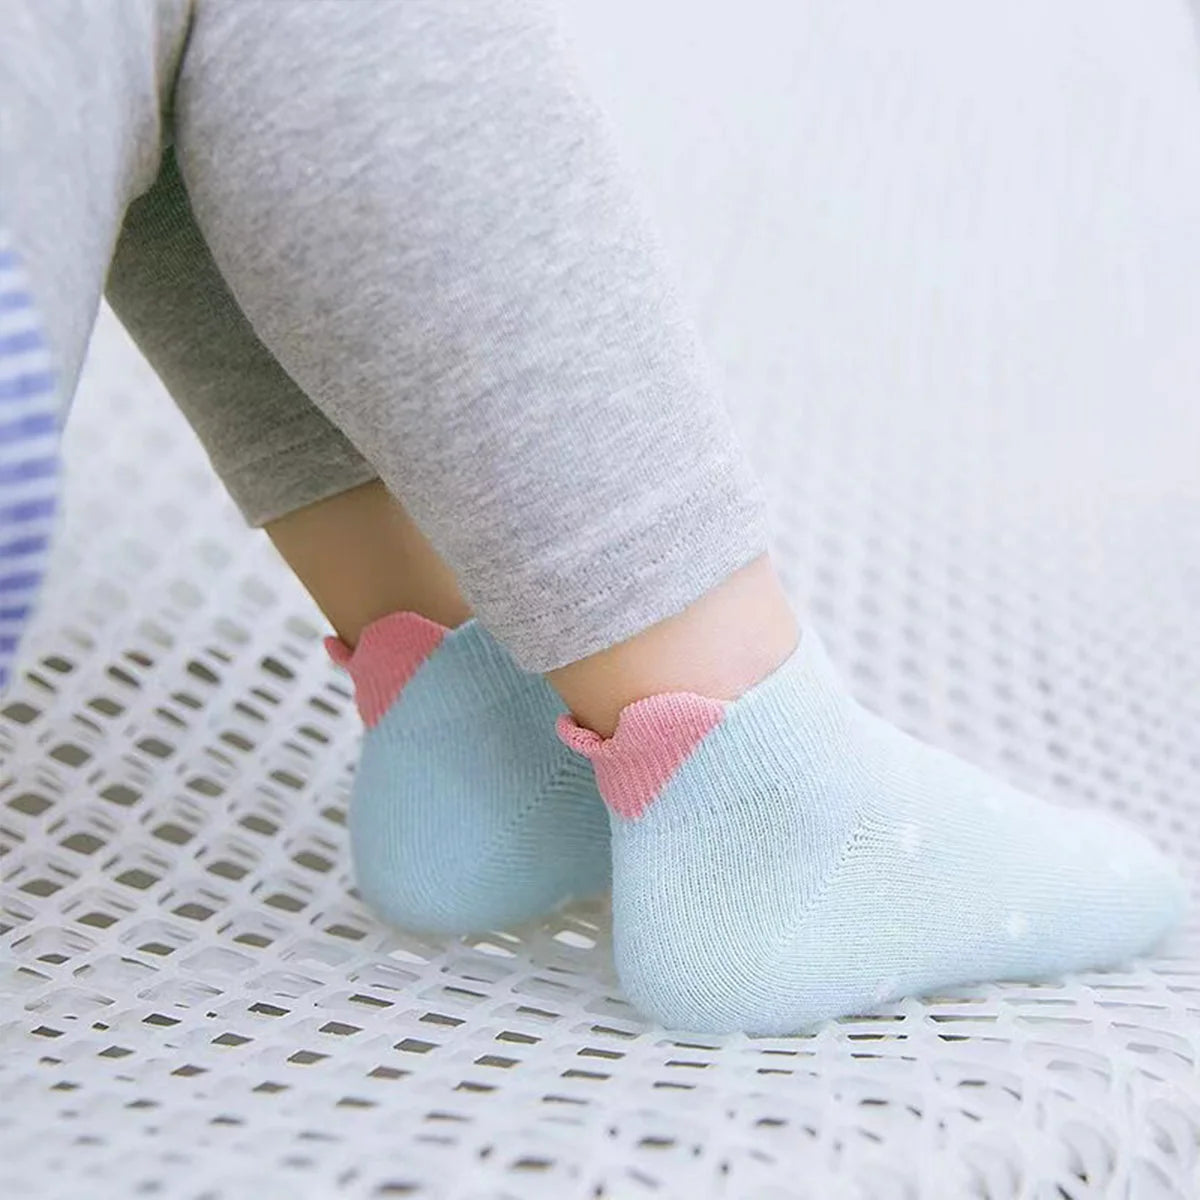 Chaussettes bleu enfants longues en coton avec des petites languettes coeur | Chaussettes confortables et élégantes | Idéales pour les enfants | Disponibles en plusieurs couleurs et tailles